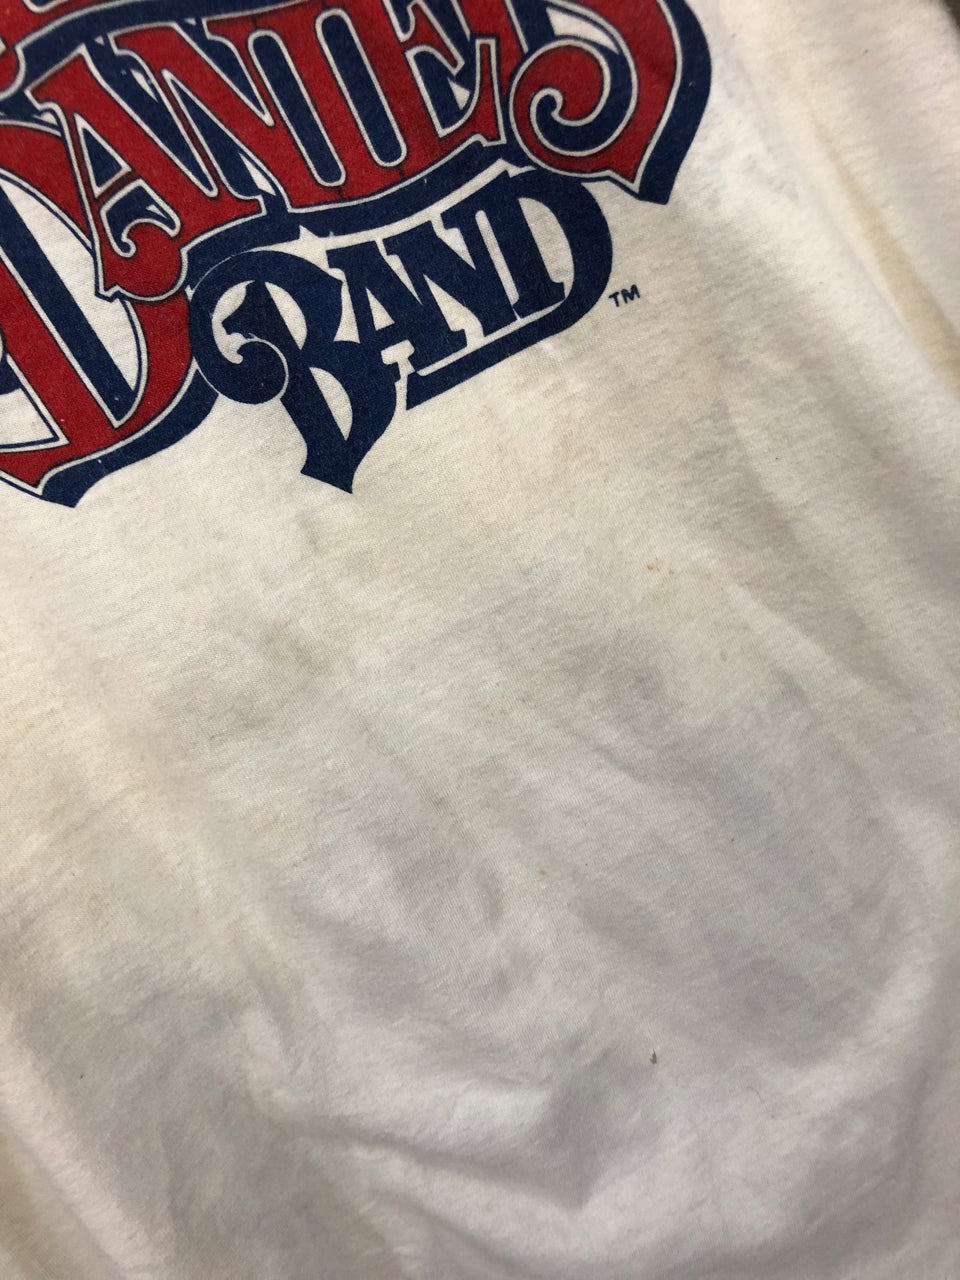 Charlie Daniels Band Windows World Tour '82 Jersey T-Shirt